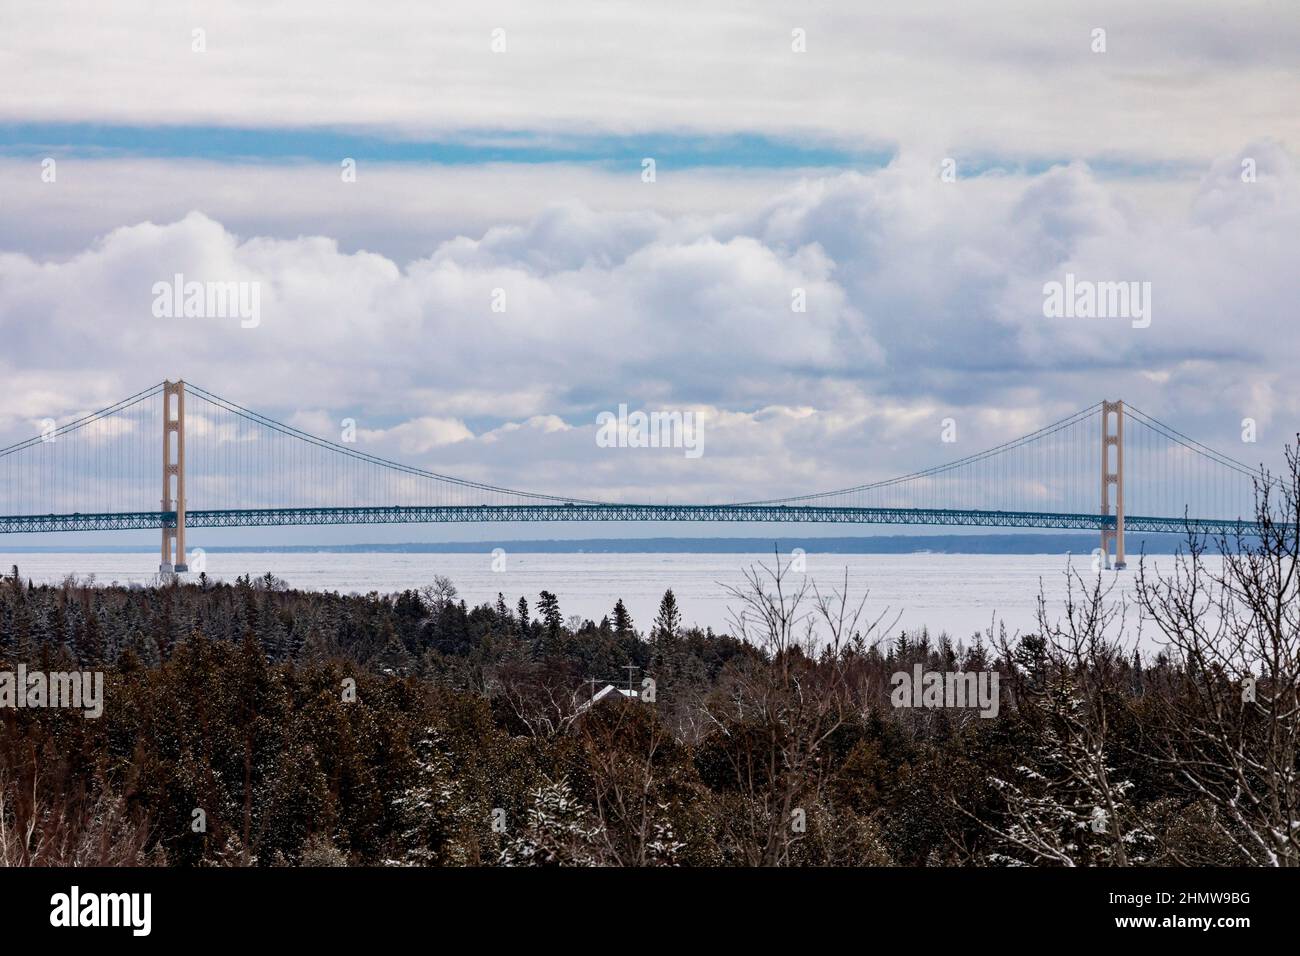 St. Ignace, Michigan - il Mackinac Bridge attraverso lo stretto congelato di Mackinac. Il ponte di Mackinac attraverso lo stretto congelato di Mackinac. Lo strai Foto Stock